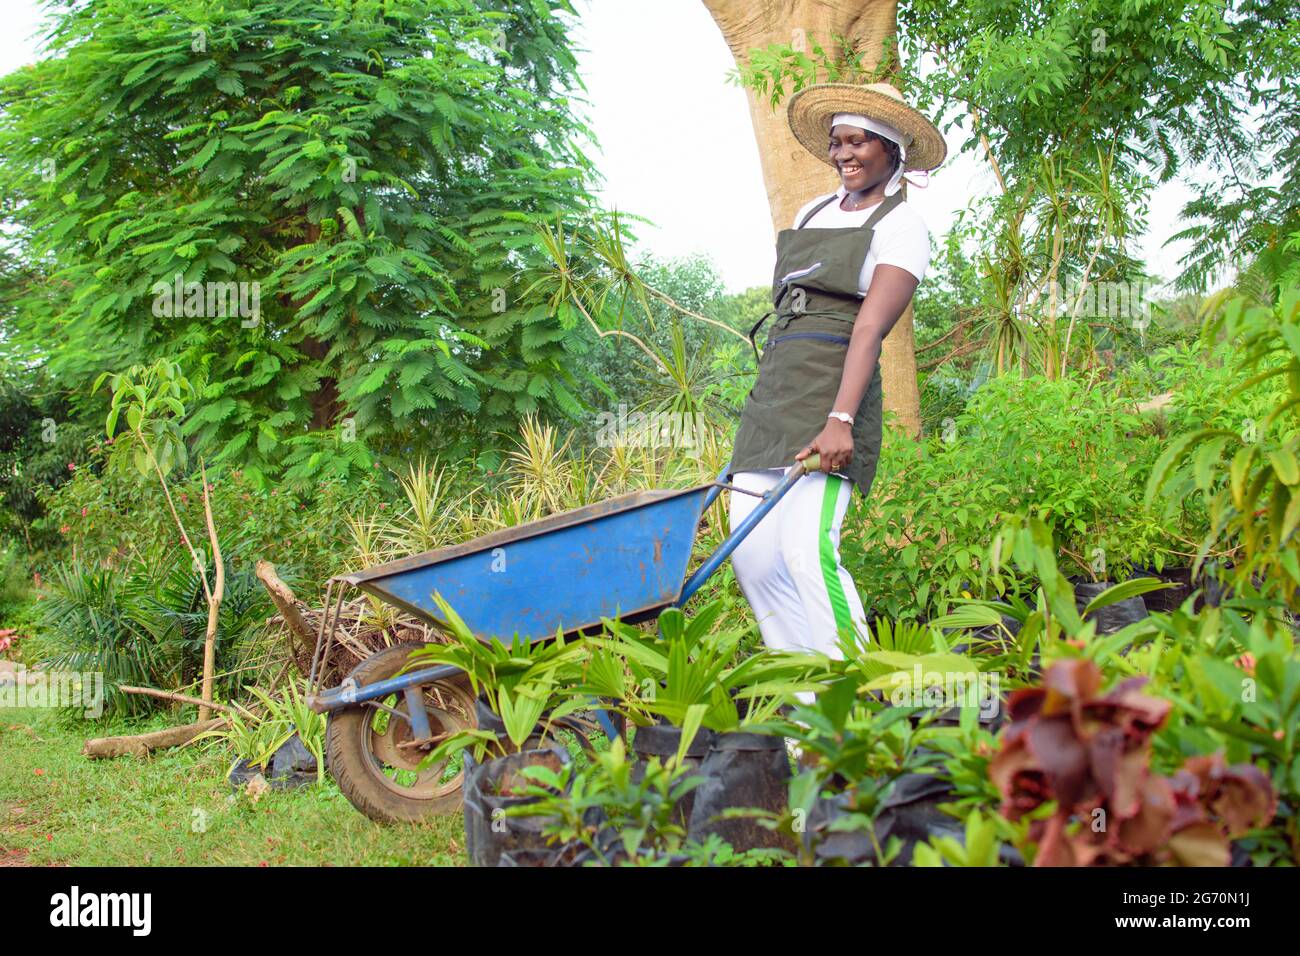 Jardinera africana, florería o horticultor usando un delantal, trabajando y empujando una carretilla azul en un jardín colorido de flores y plantas Foto de stock